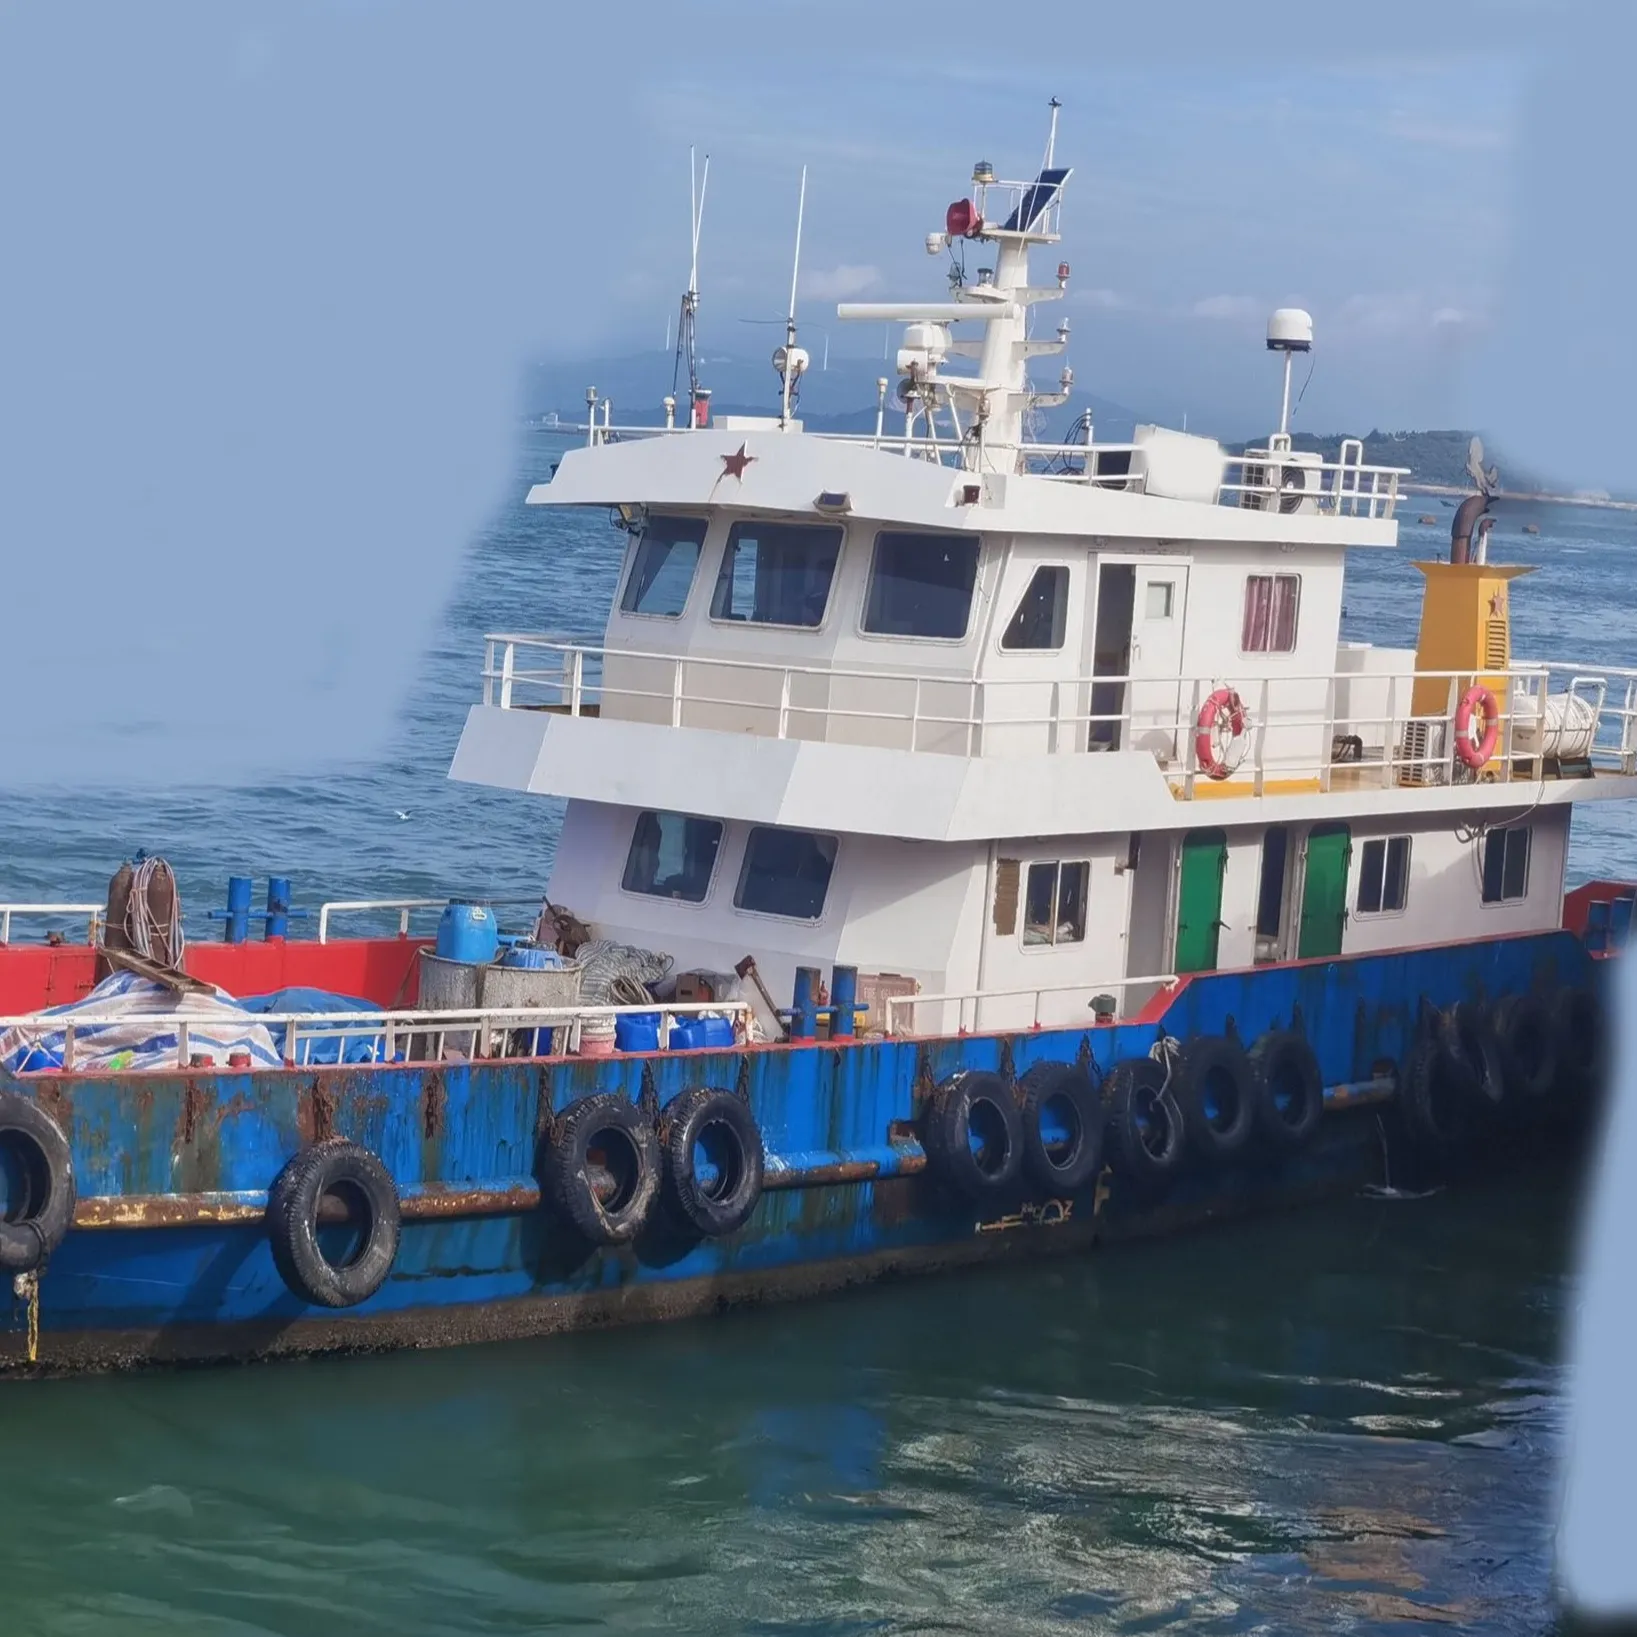 Vente de bateau de trafic côtier en acier de 26 mètres d'occasion construit en 2019